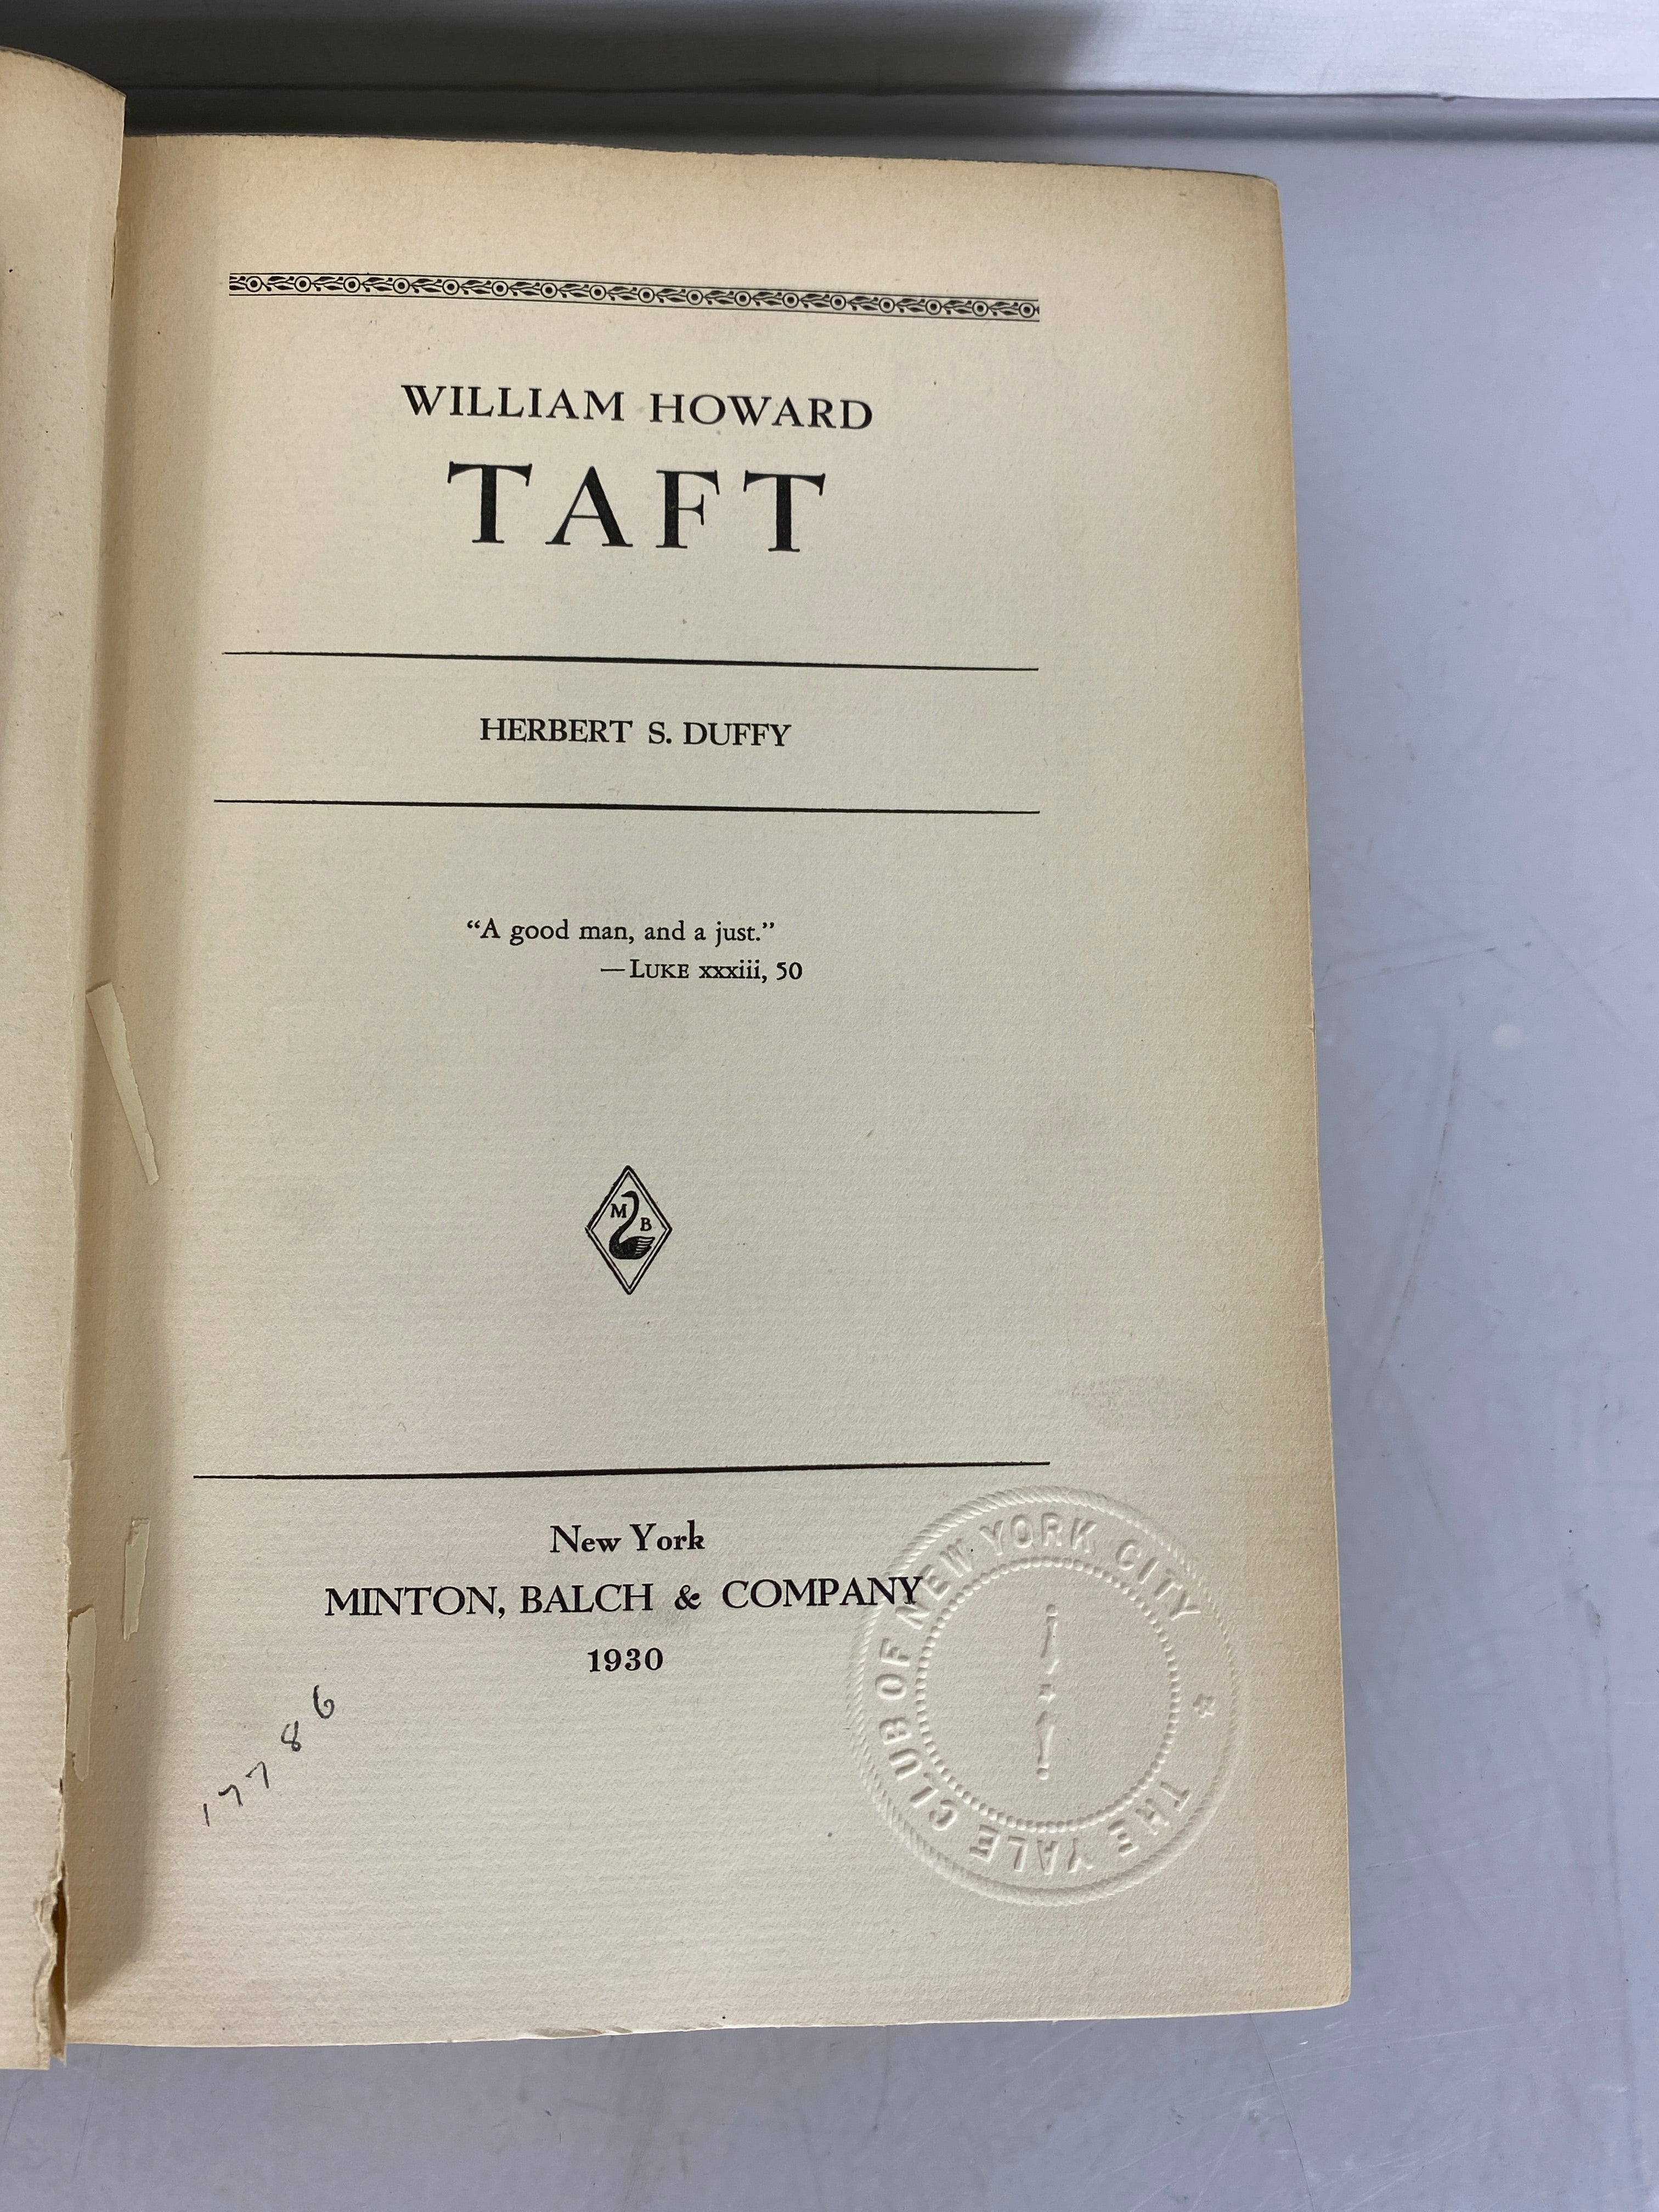 President William Howard Taft by Herbert S. Duffy 1930 HC